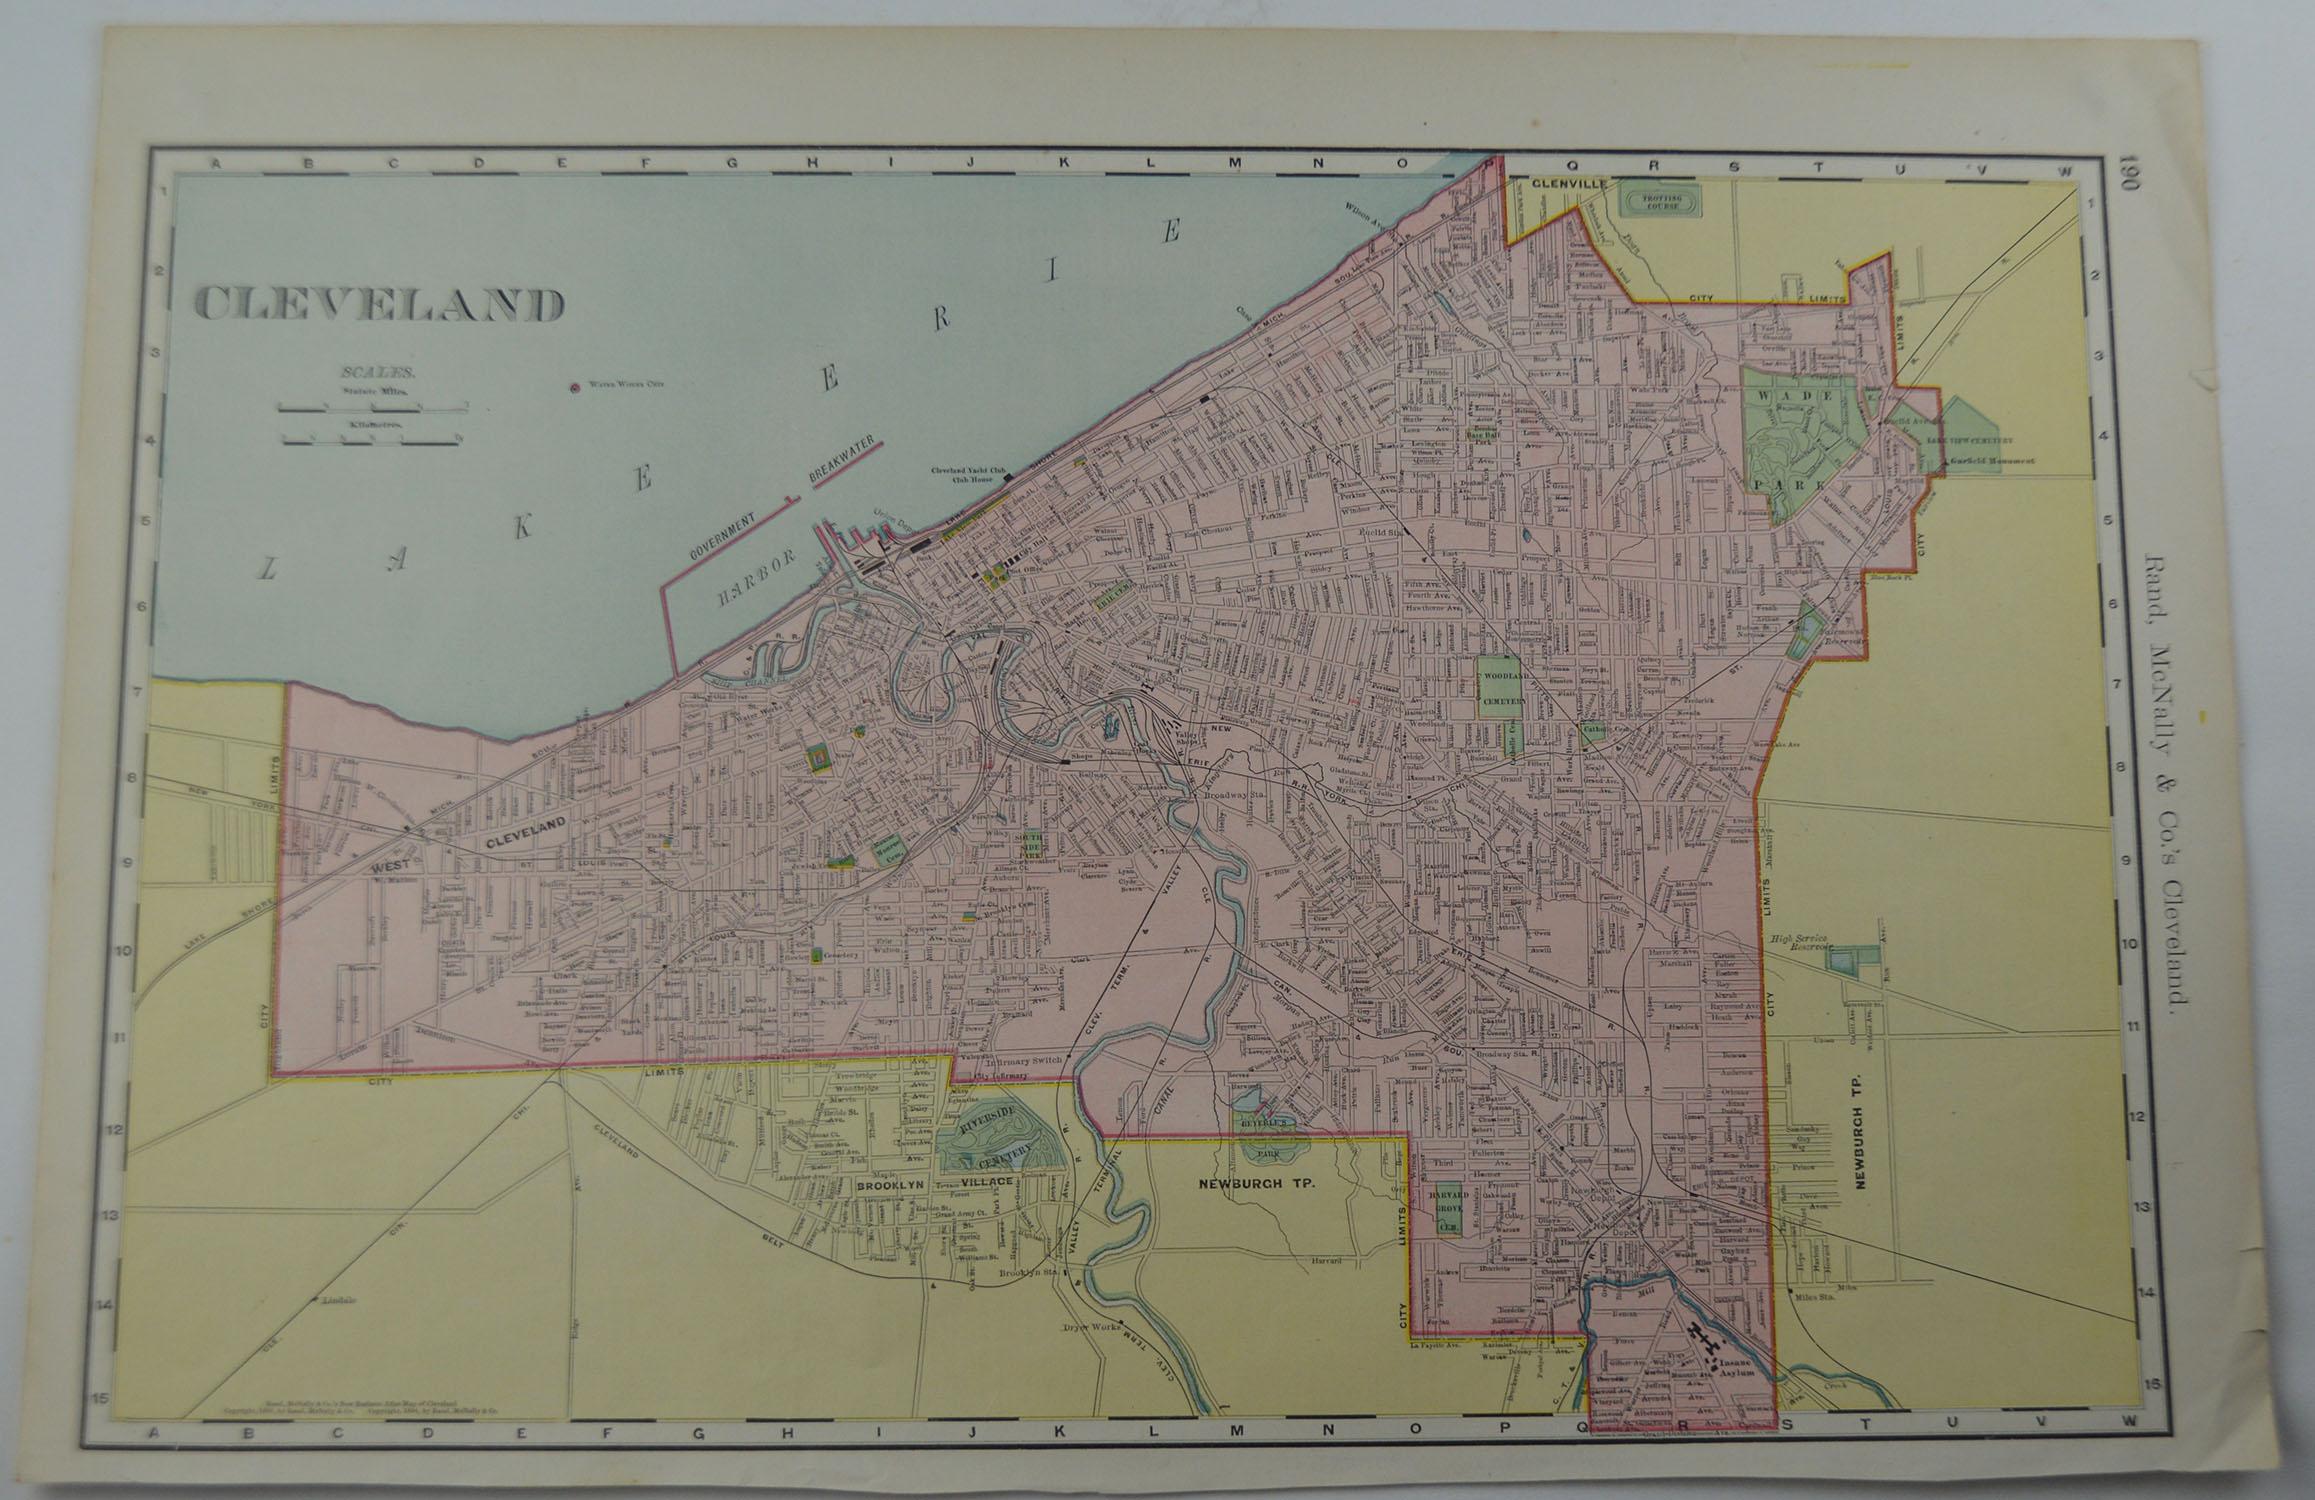 Other Original Antique City Plan of Cleveland, Ohio, USA, circa 1900